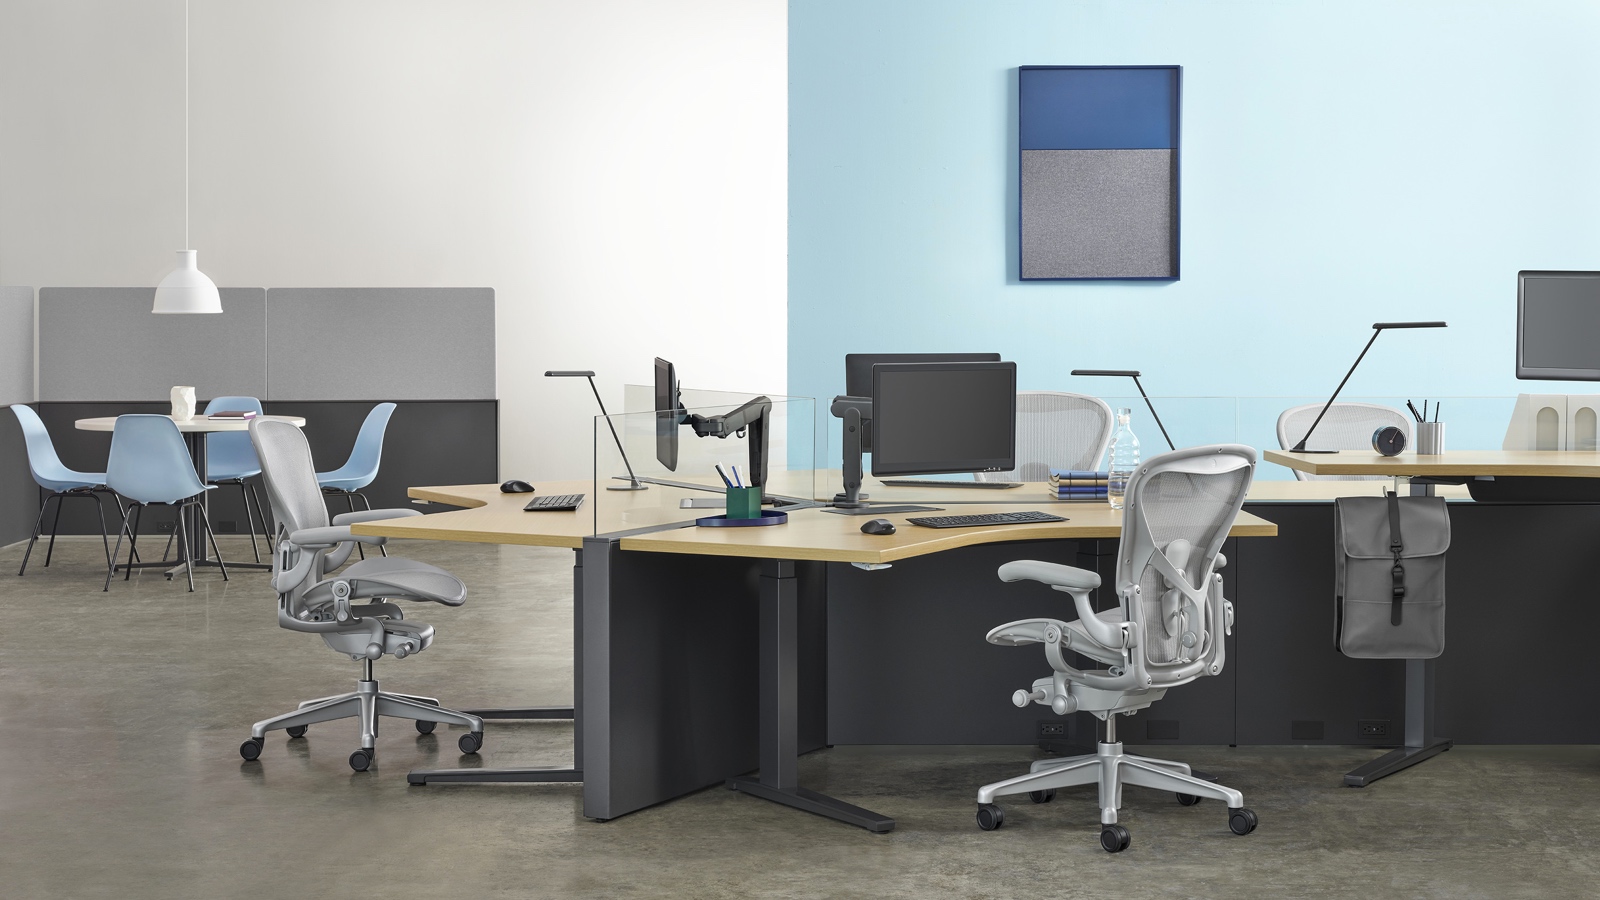 Estación de trabajo Canvas Channel con configuración en 120 grados, escritorios elevados Renew, y sillas para oficinas Aeron en gris claro con espacio colaborativo al fondo. Seleccione para dirigirse a la página de espacios de trabajo compartidos dentro de Canvas Lookbook.